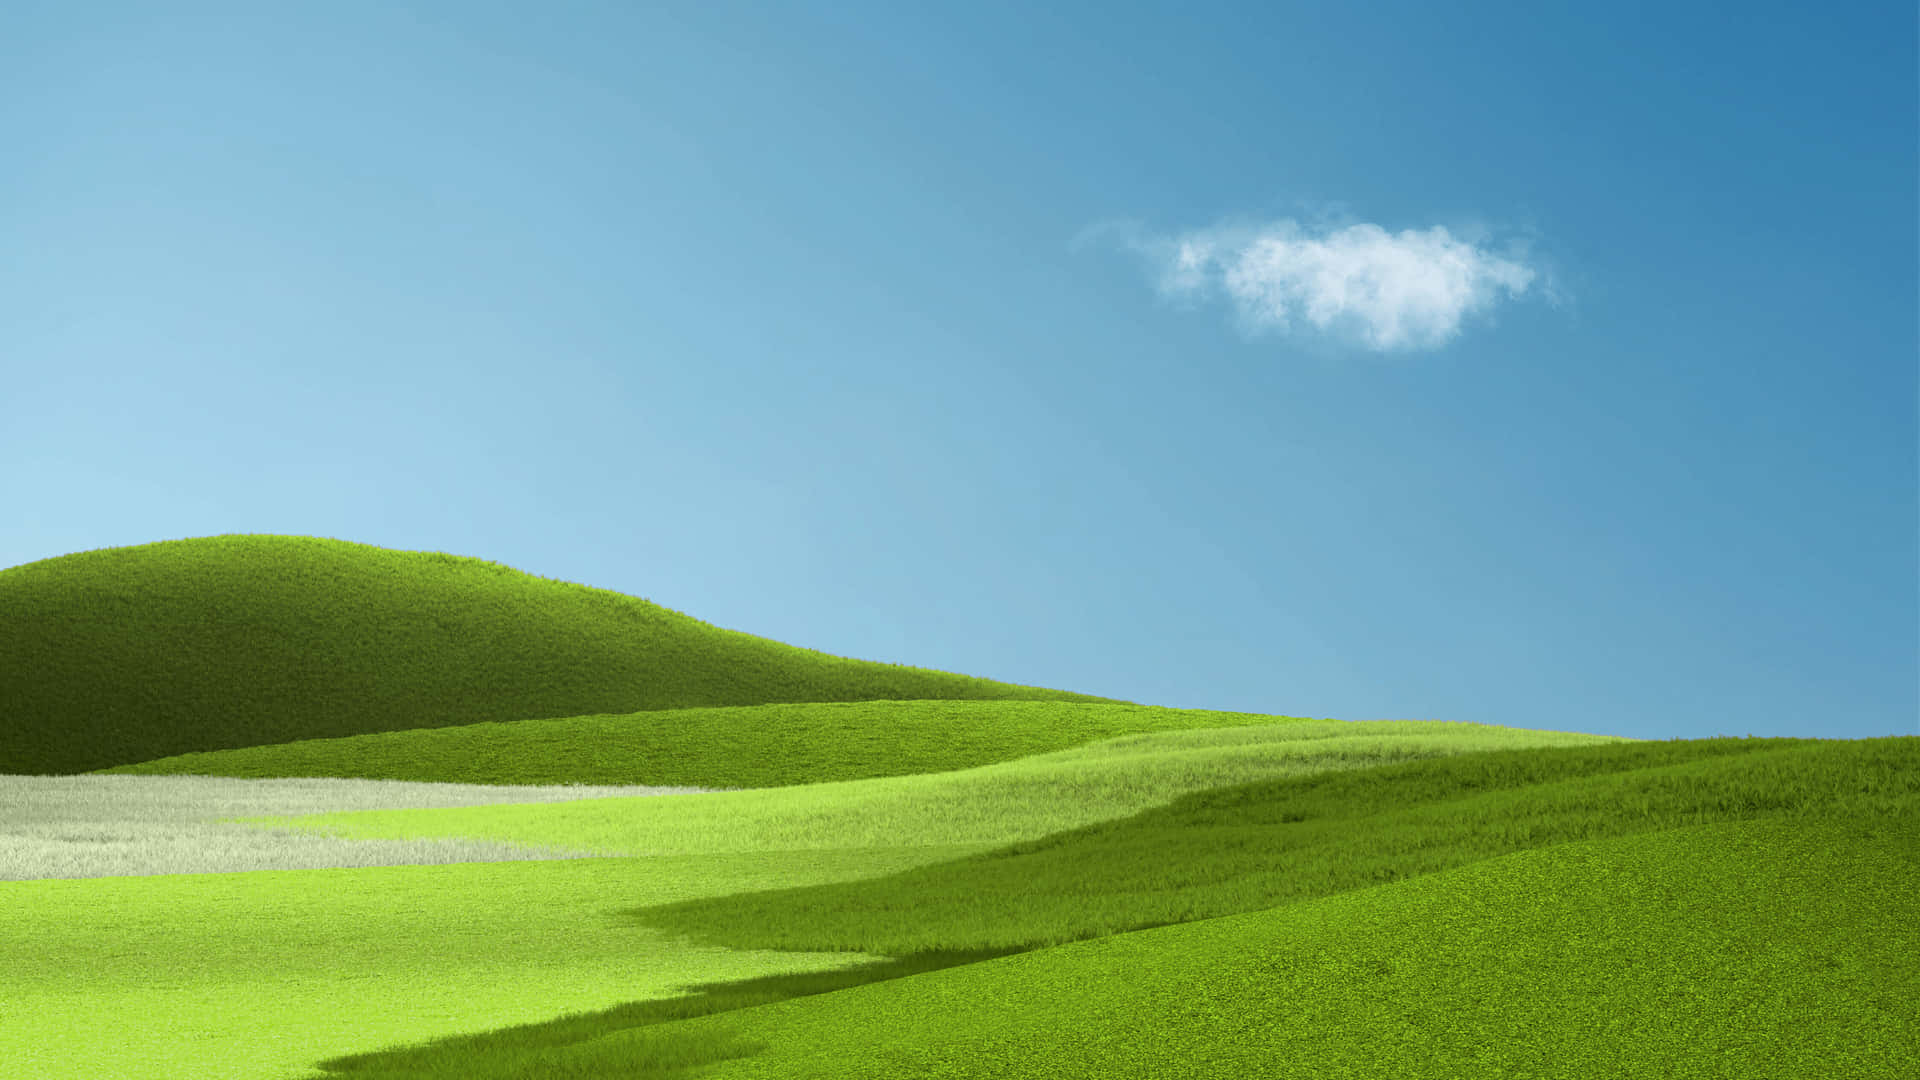 Enblandning Av Grönt Gräs Och Blå Himmel Skapar En Perfekt Bakgrundsbild.